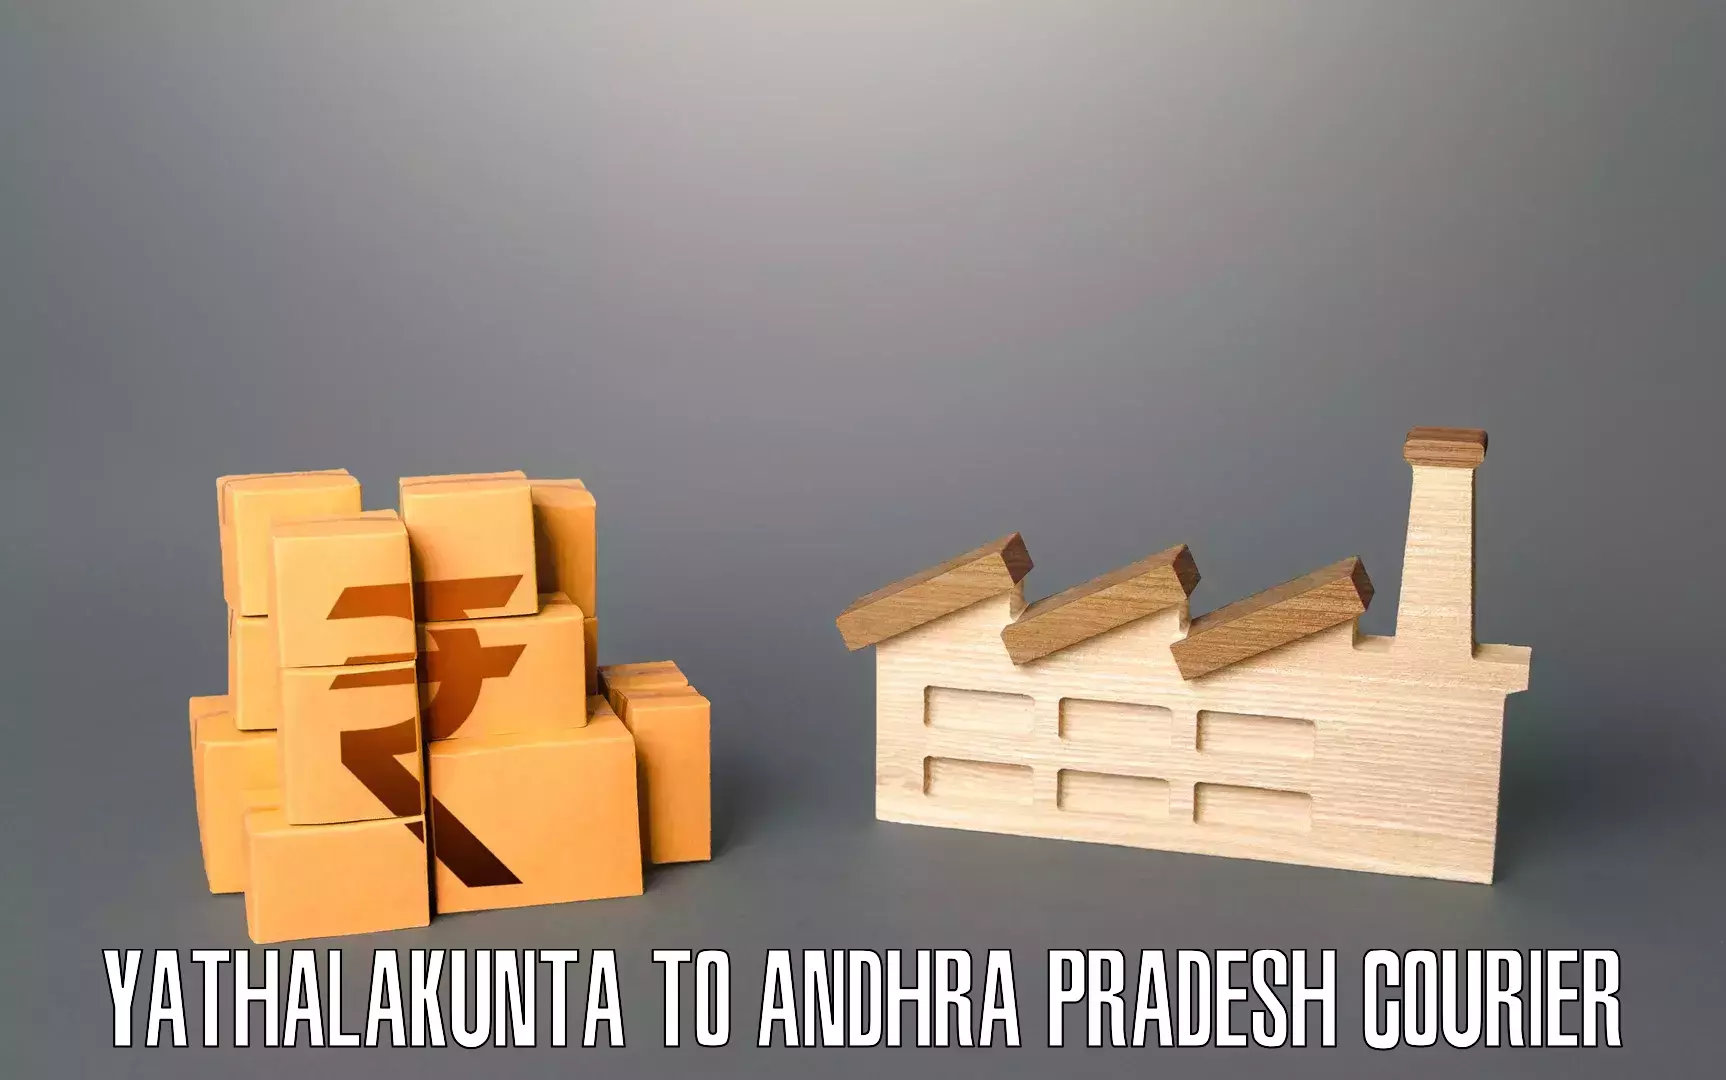 Furniture moving service Yathalakunta to NIT Andhra Pradesh